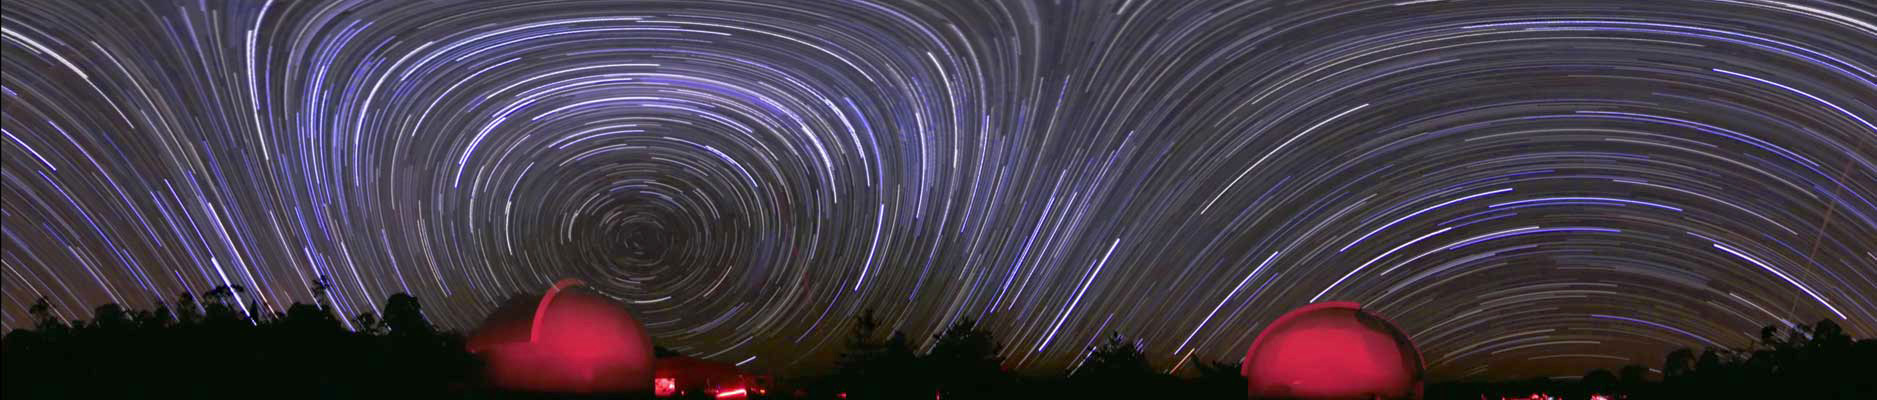 Iskazhennoe nebo: panorama zvezdnyh sledov